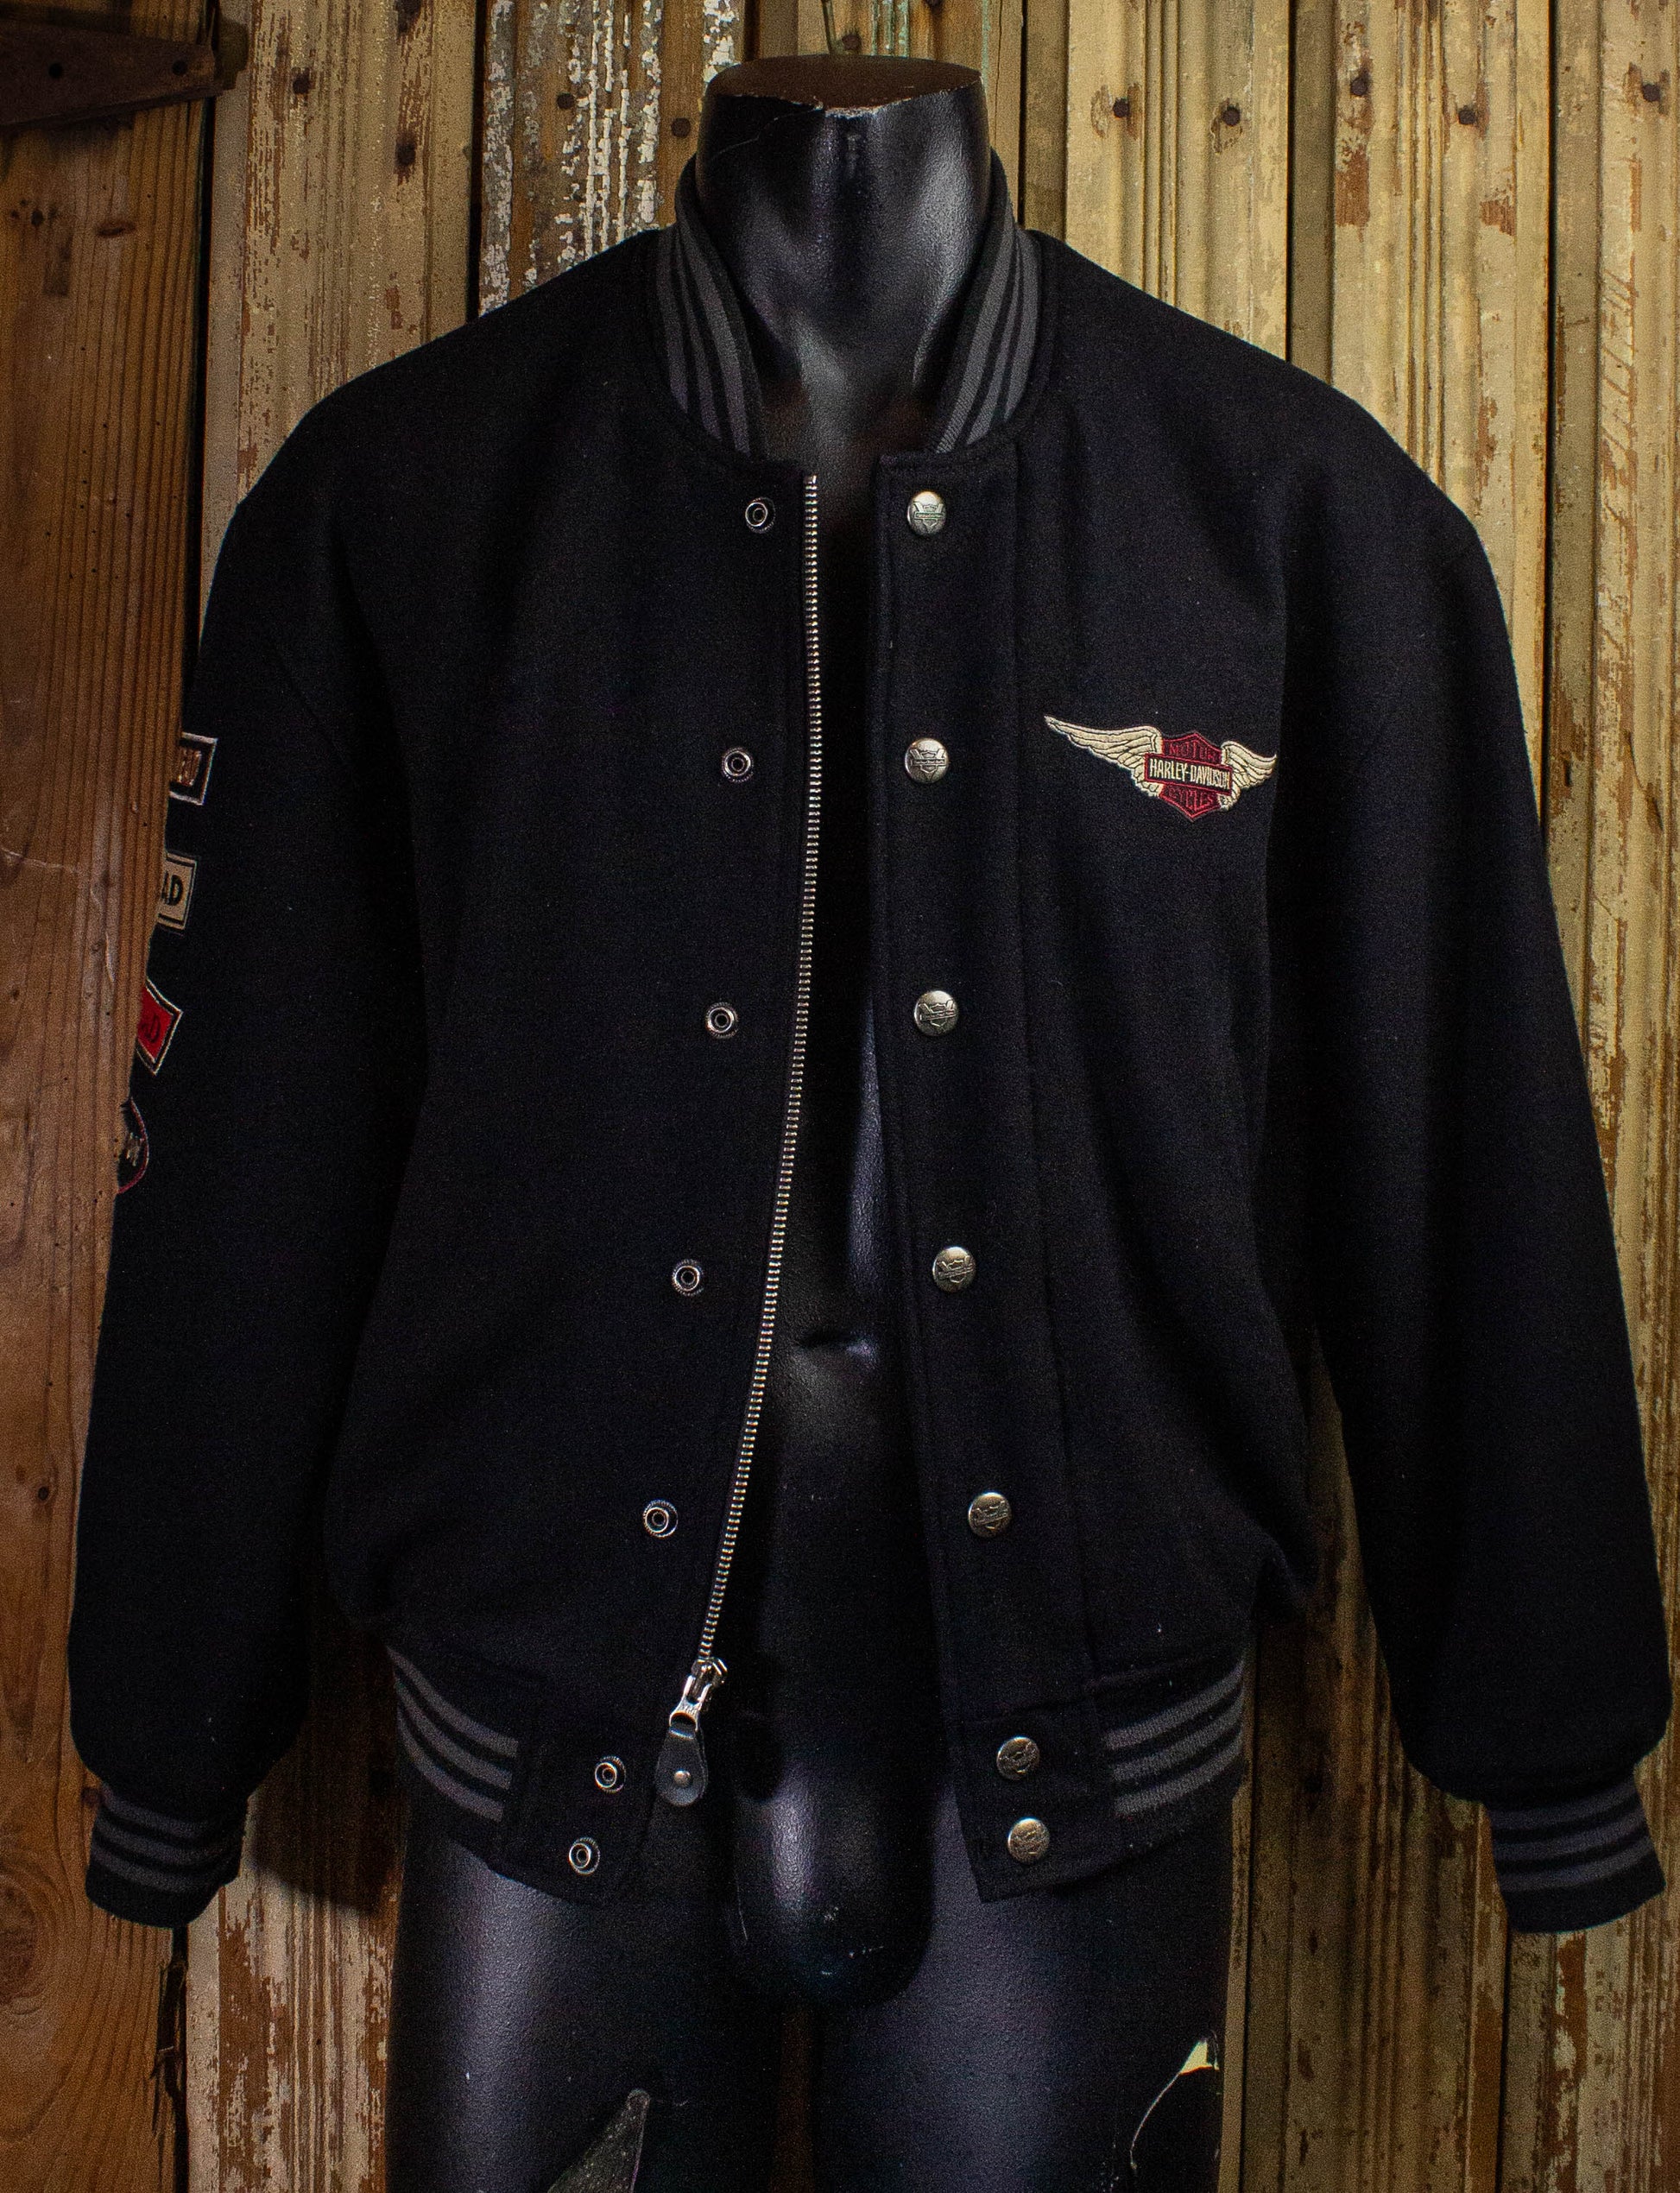 Vintage Tour Lion Harley Davidson Leather Biker Jacket 90s Black/Gray Small